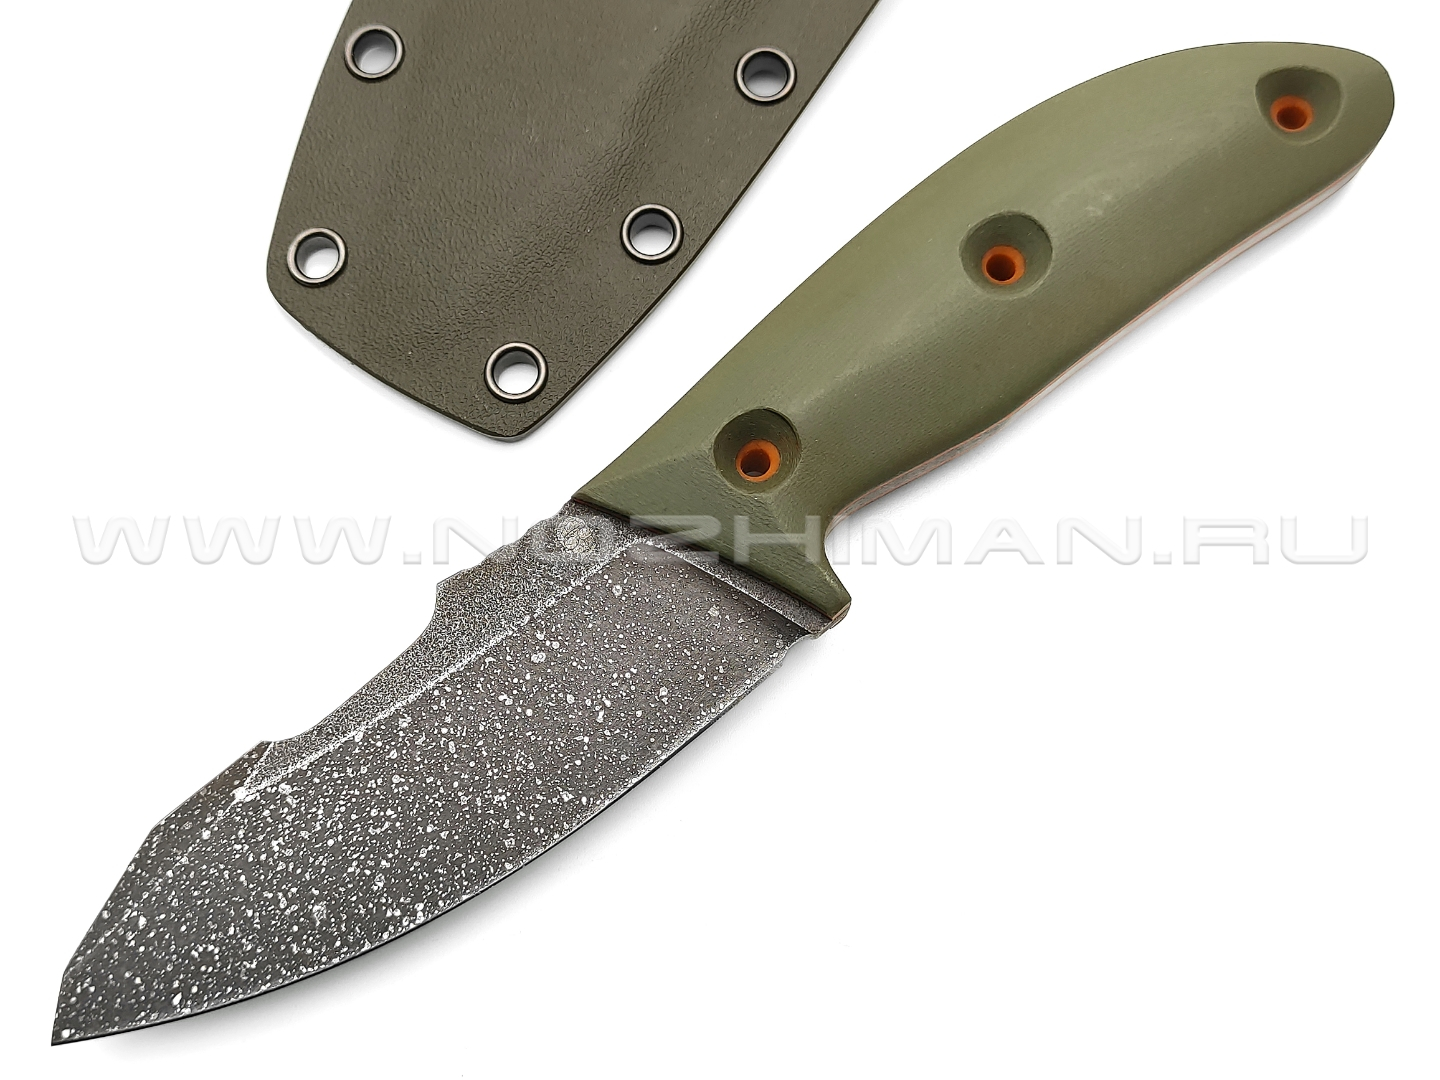 Dyag knives нож Model02_1.1 сталь N690, рукоять G10 olive